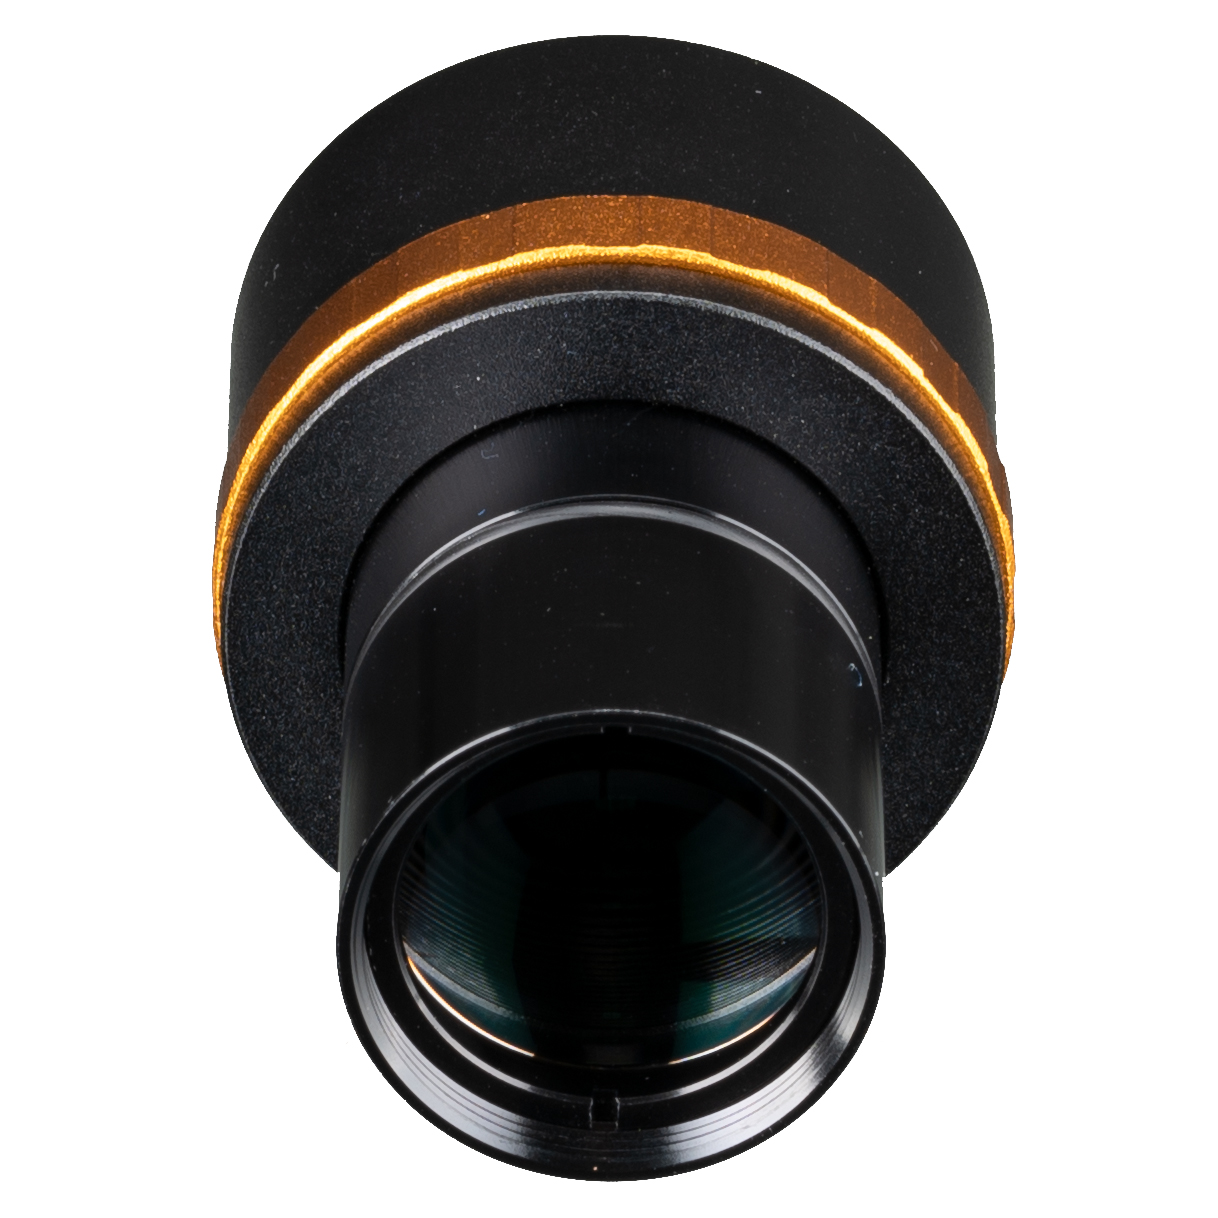 BRESSER Reduction lens 0.5x variable